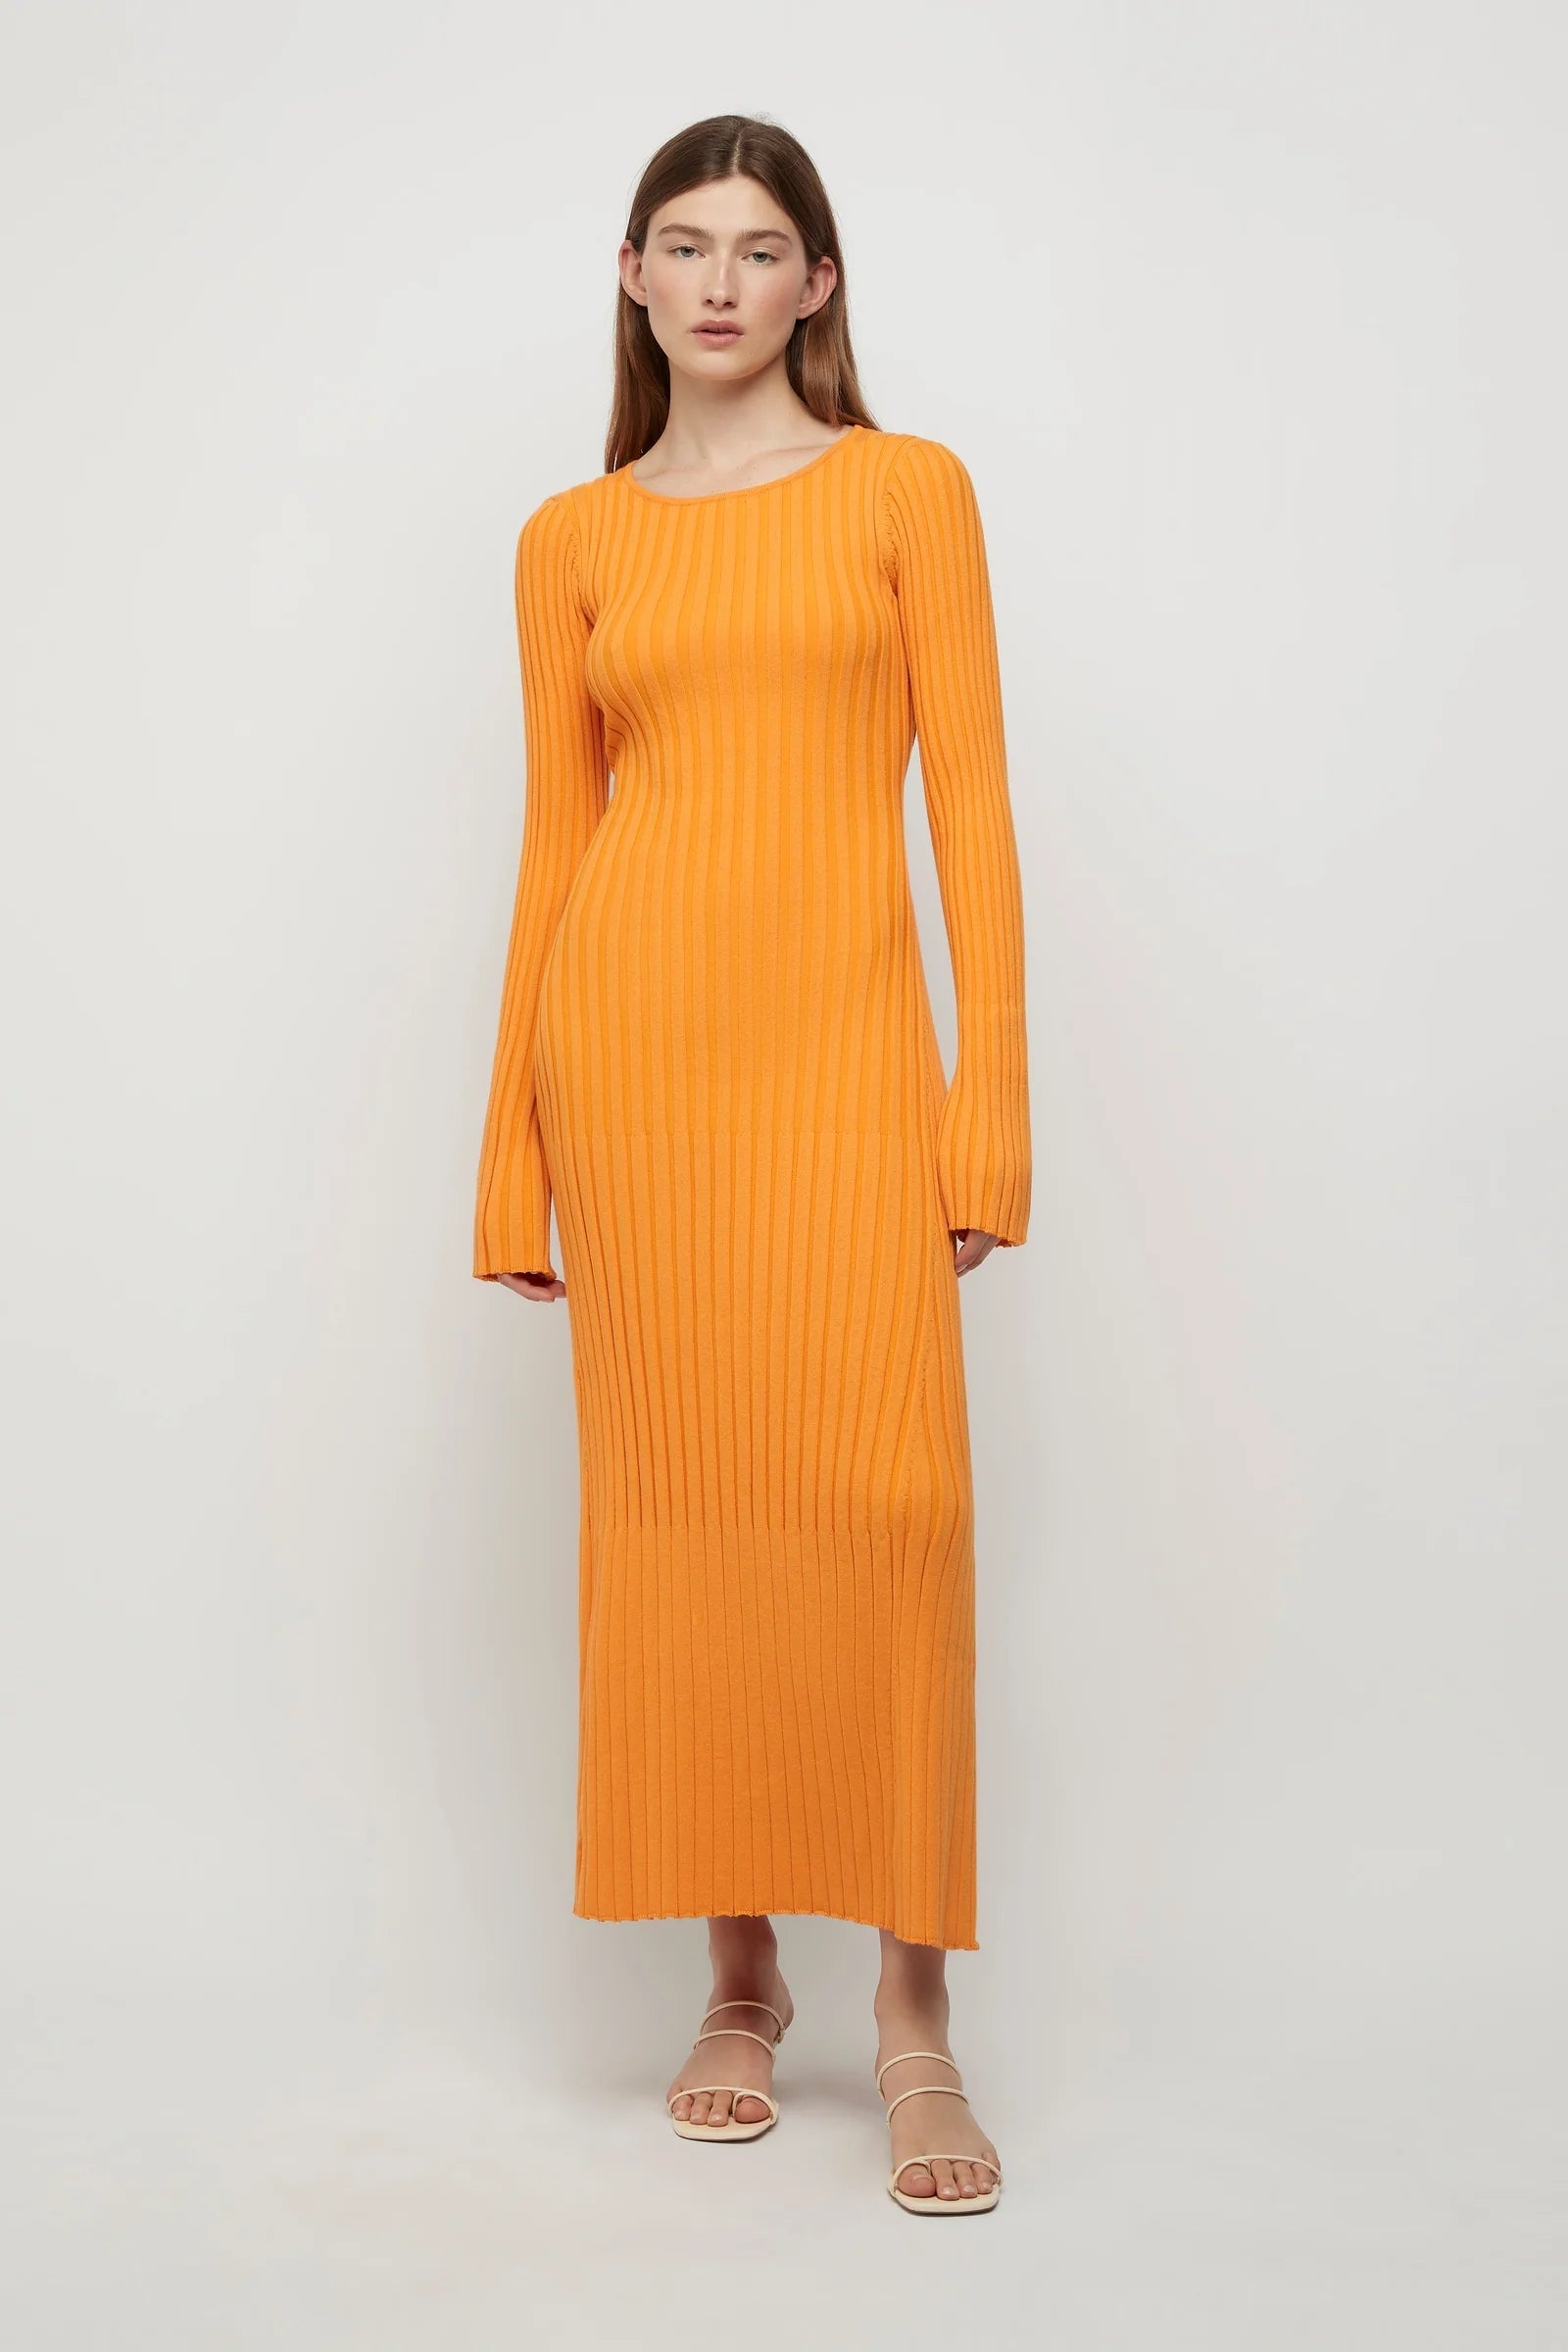 Lowry Cross Back Knit Dress - Tangerine